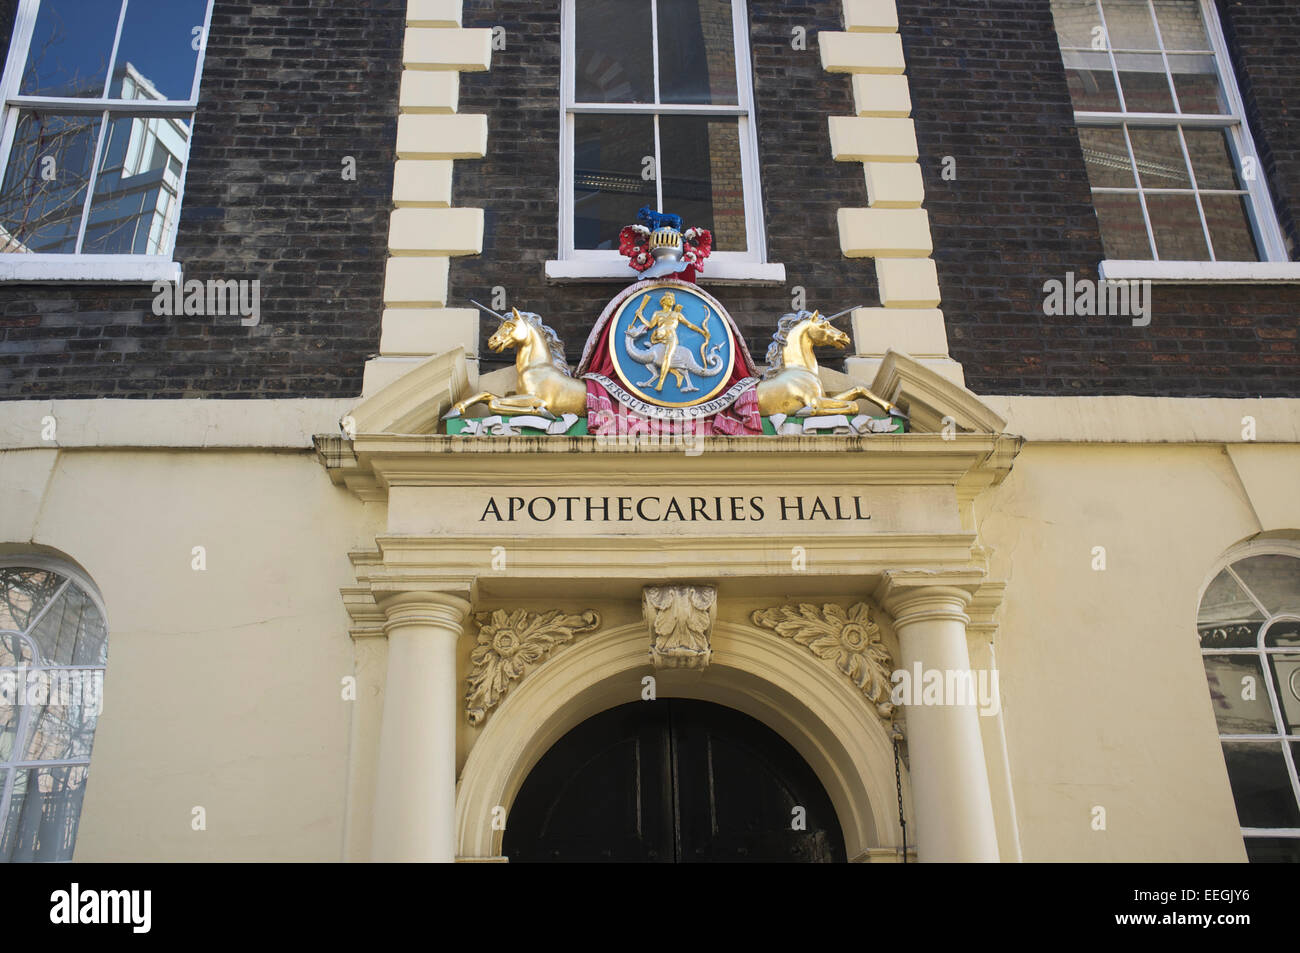 Apothecaries Hall facade, London Stock Photo